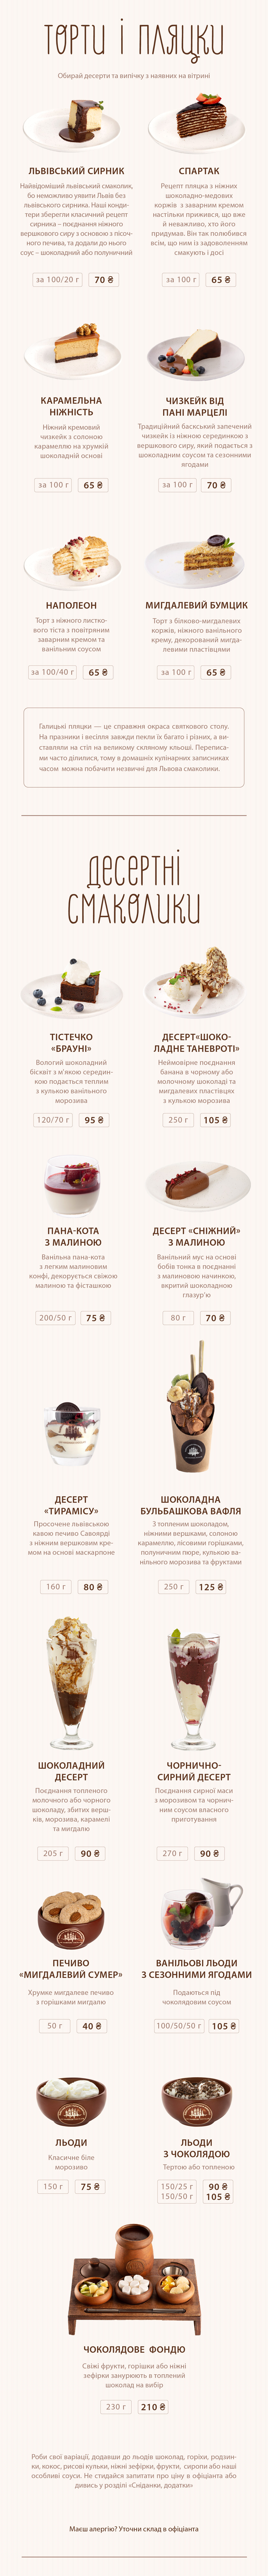 Львівська майстерня шоколаду. Меню: десерти, торти